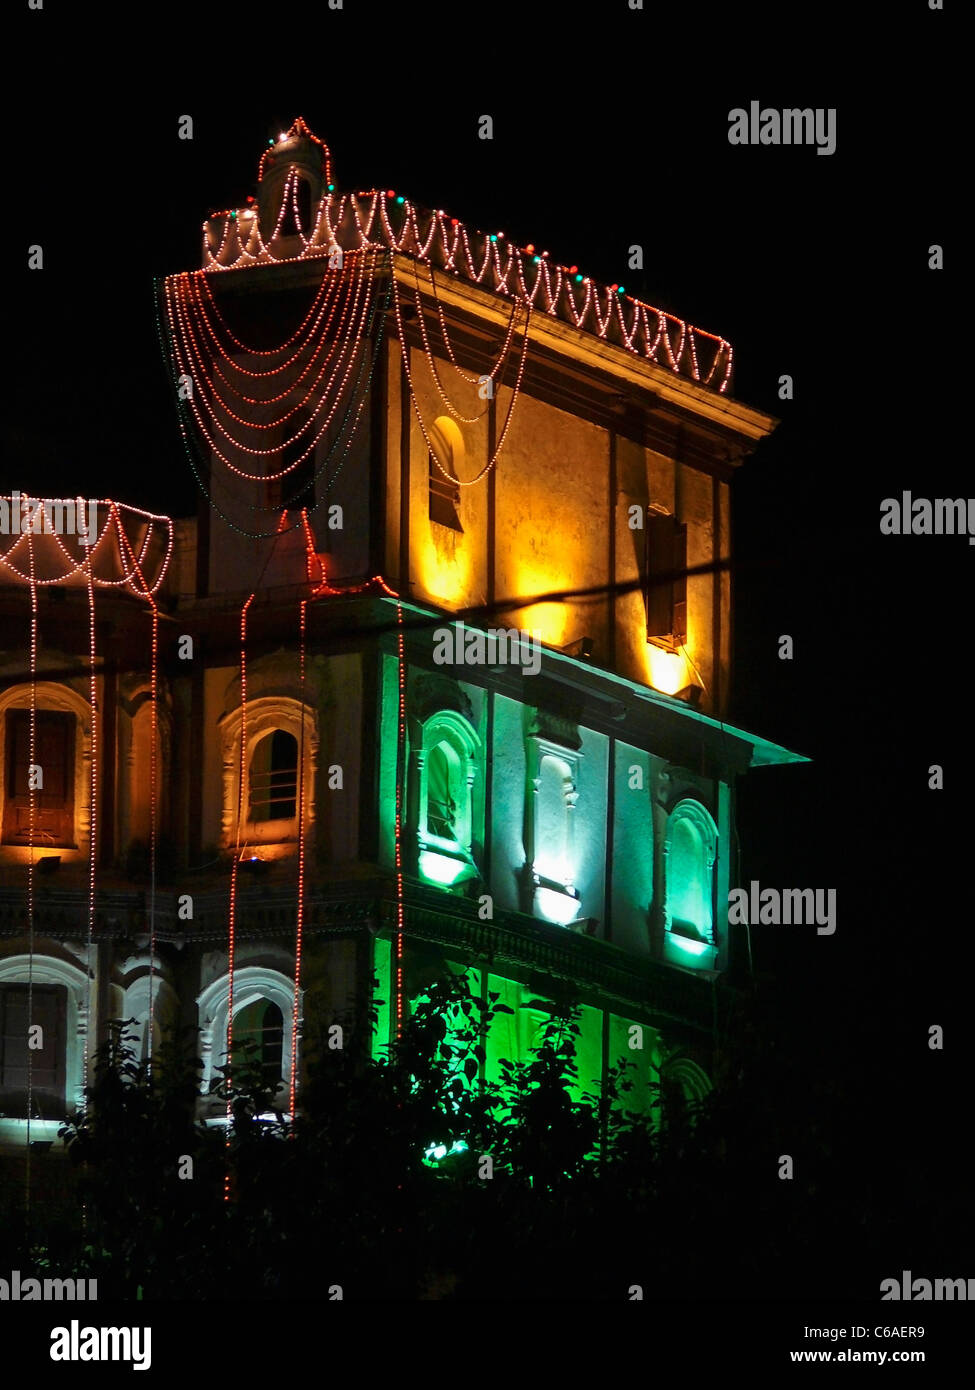 Indore Palast, dekoriert mit Licht am Abend des 15. august. Indore, Madhya Pradesh, Indien Stockfoto